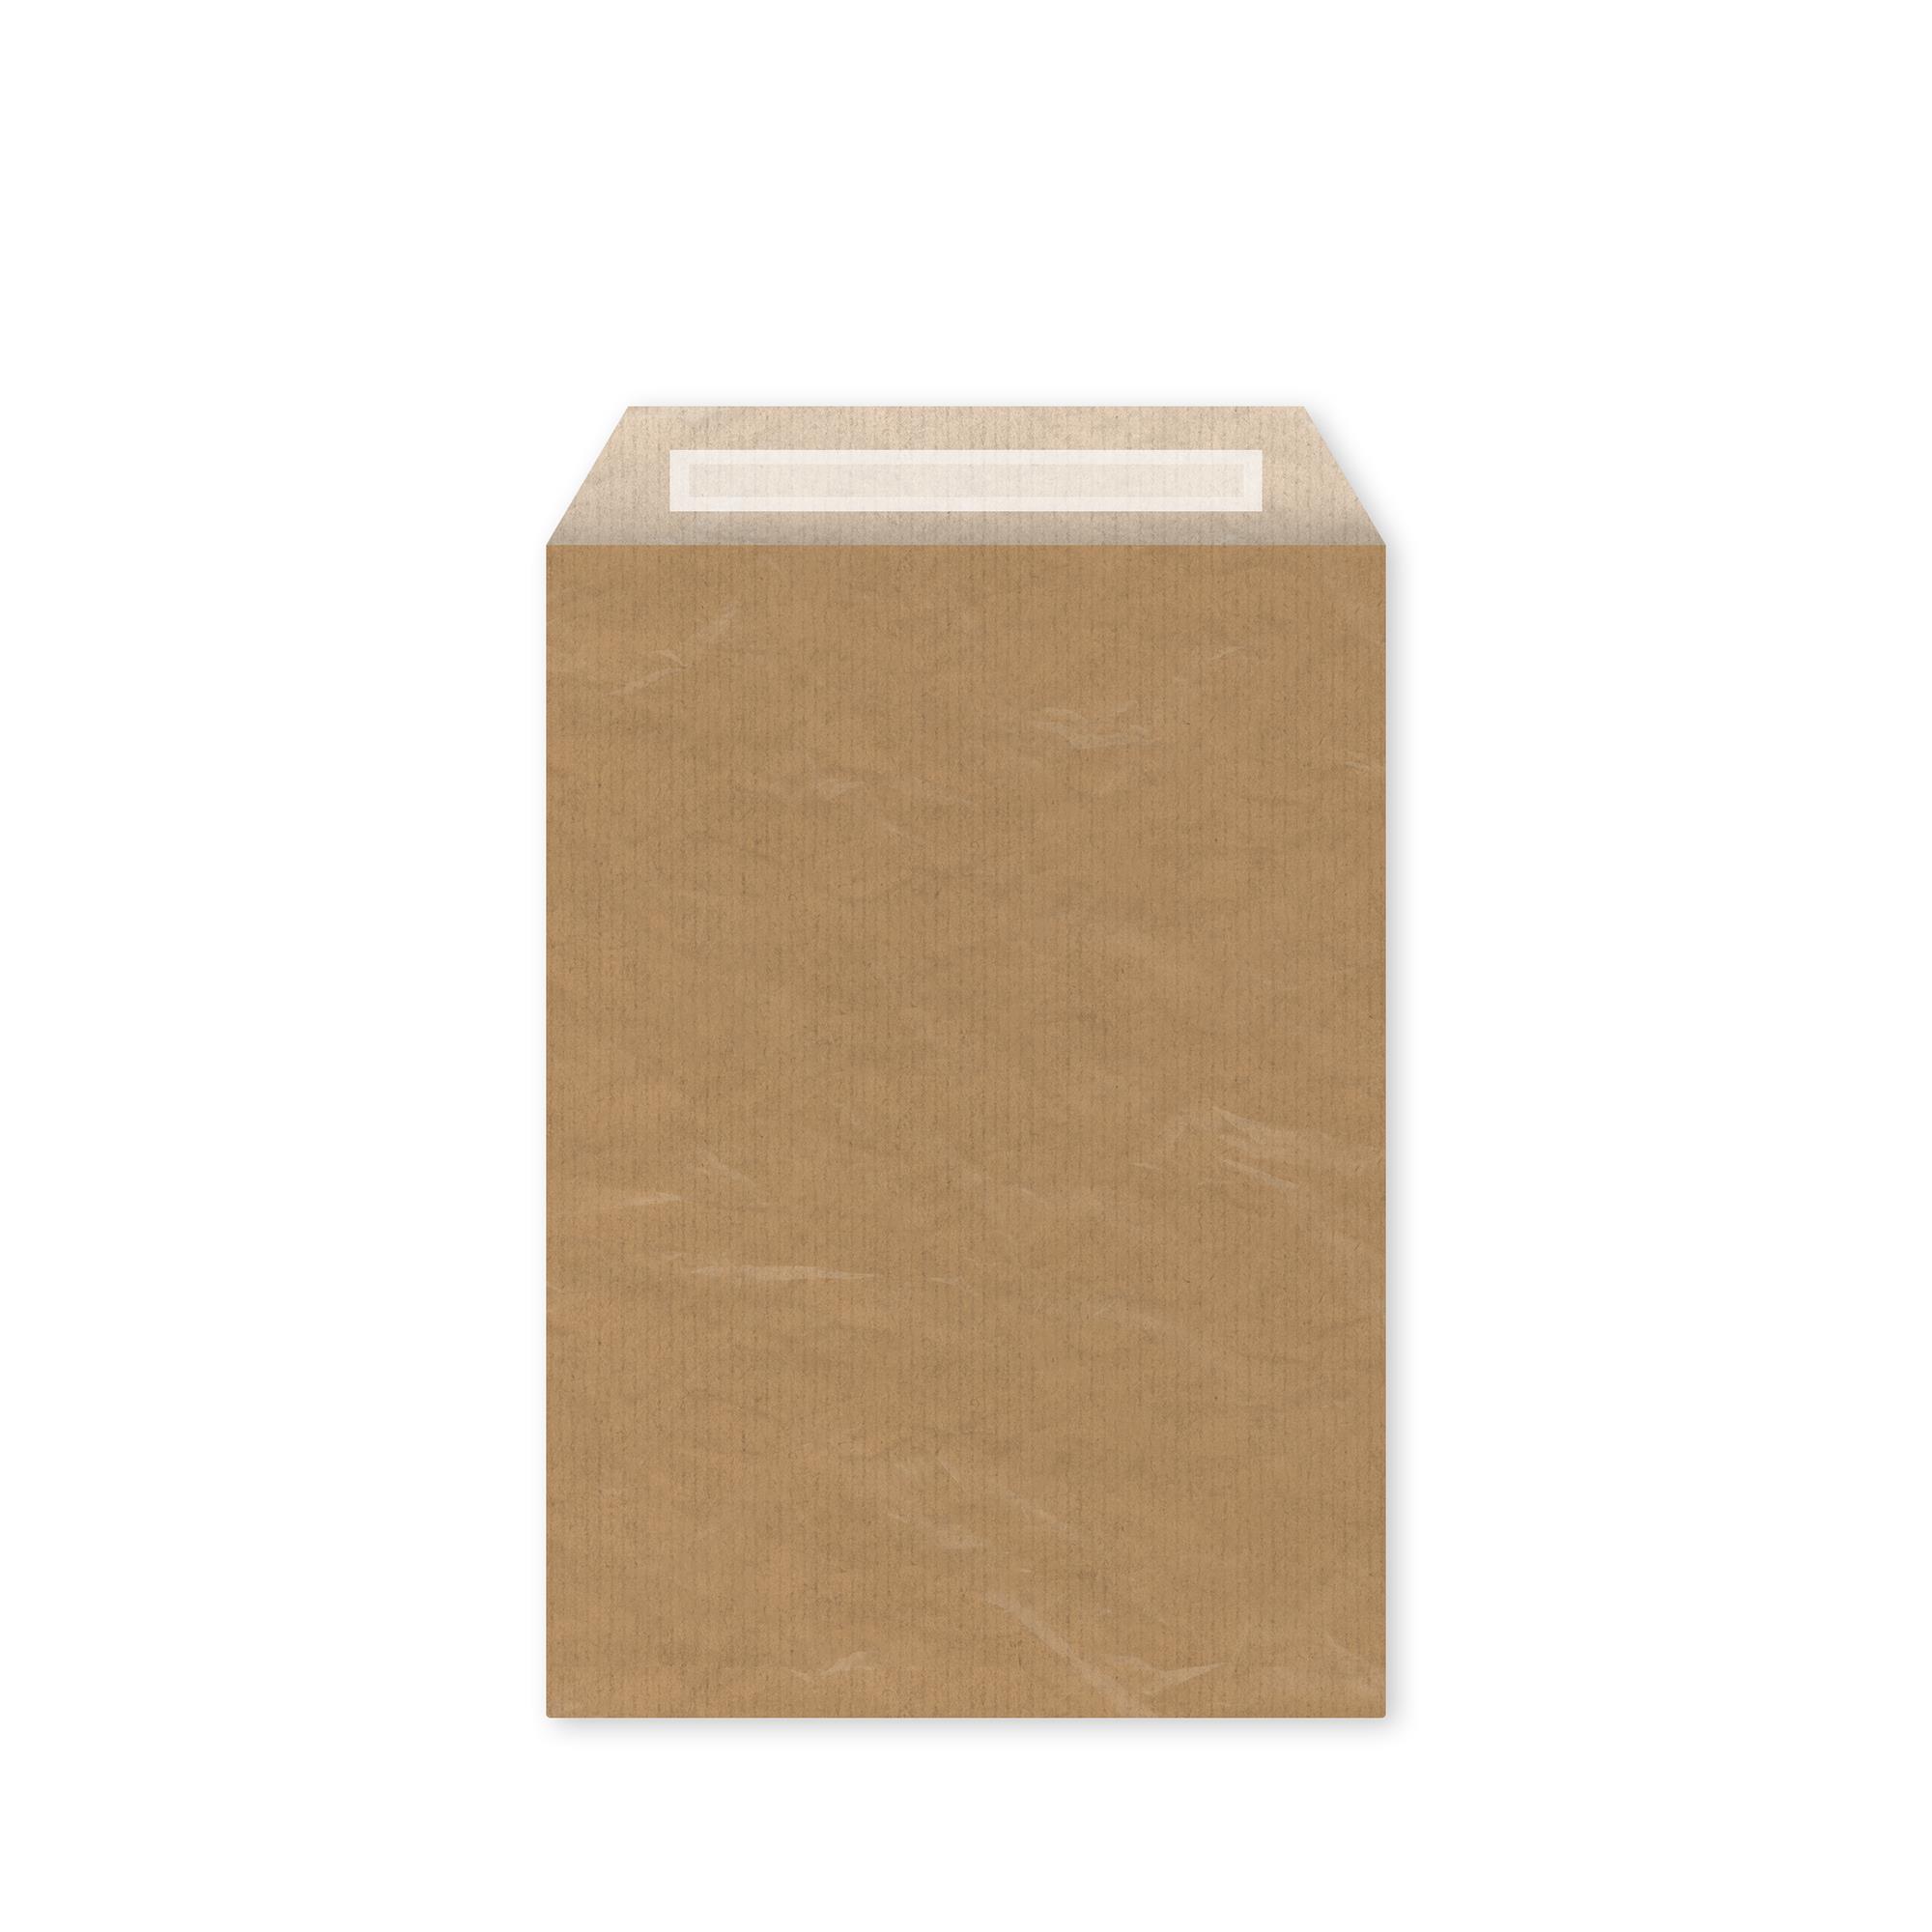 Bantlı Hediye Paketi Kağıt Altın Sarısı 20x6x25,5 cm - 25 Adet